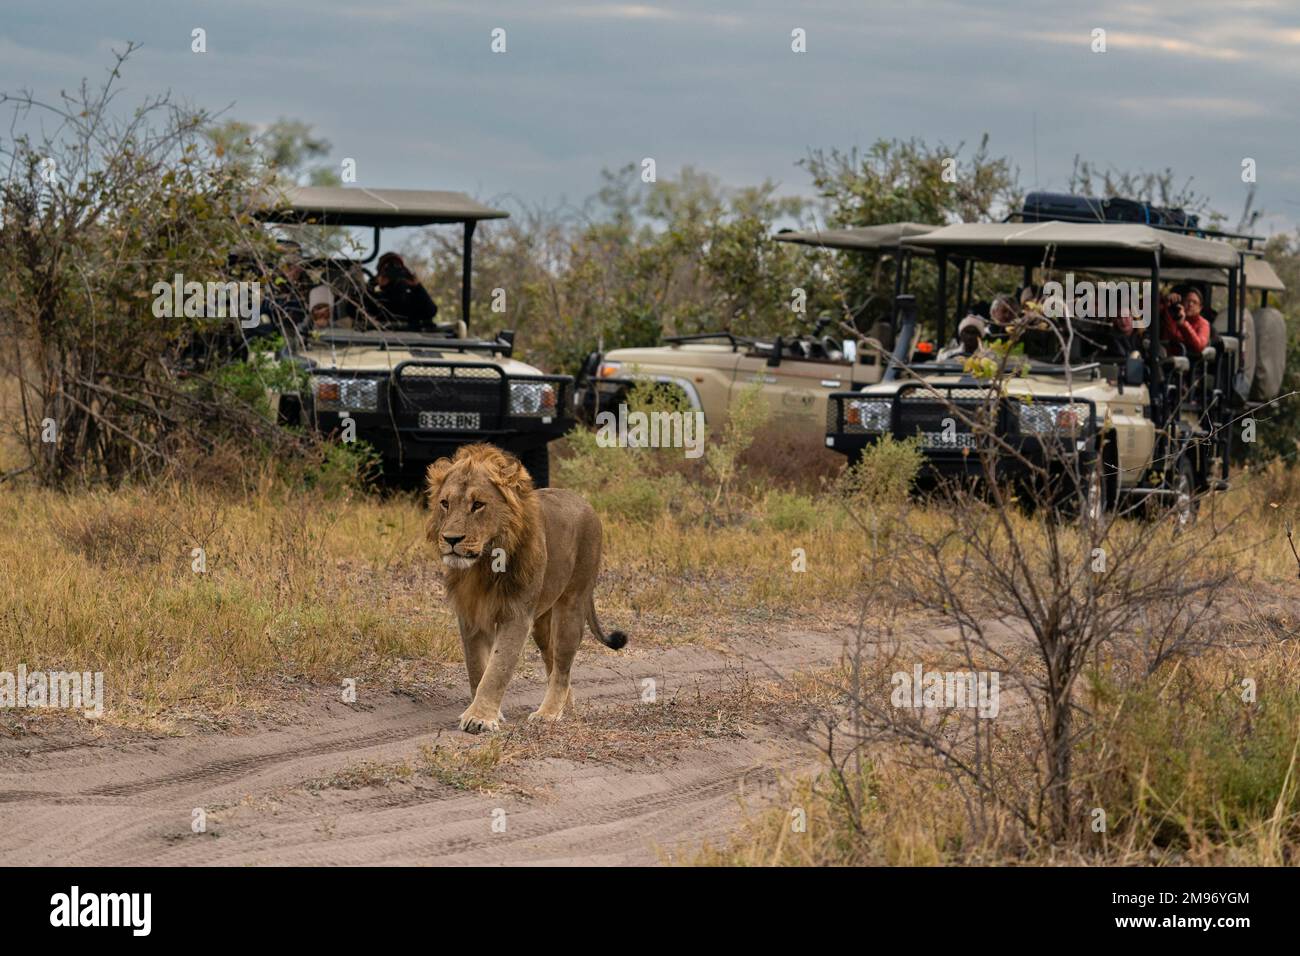 Tourists in a safari vehicle watching a lion (Panthera leo), Savuti, Chobe National Park, Botswana. Stock Photo